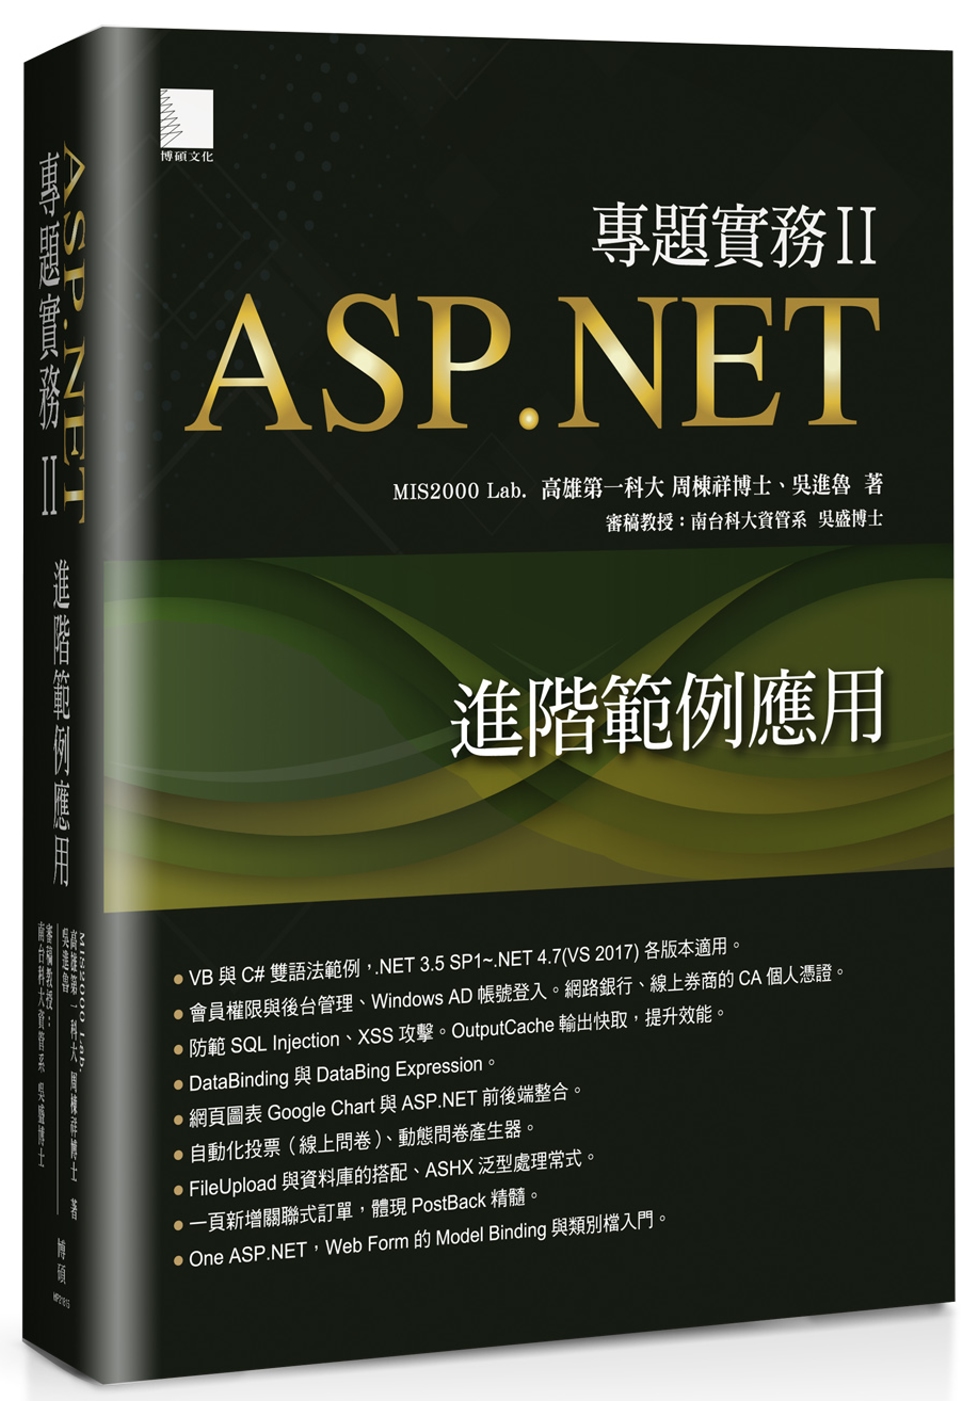 ASP.NET專...